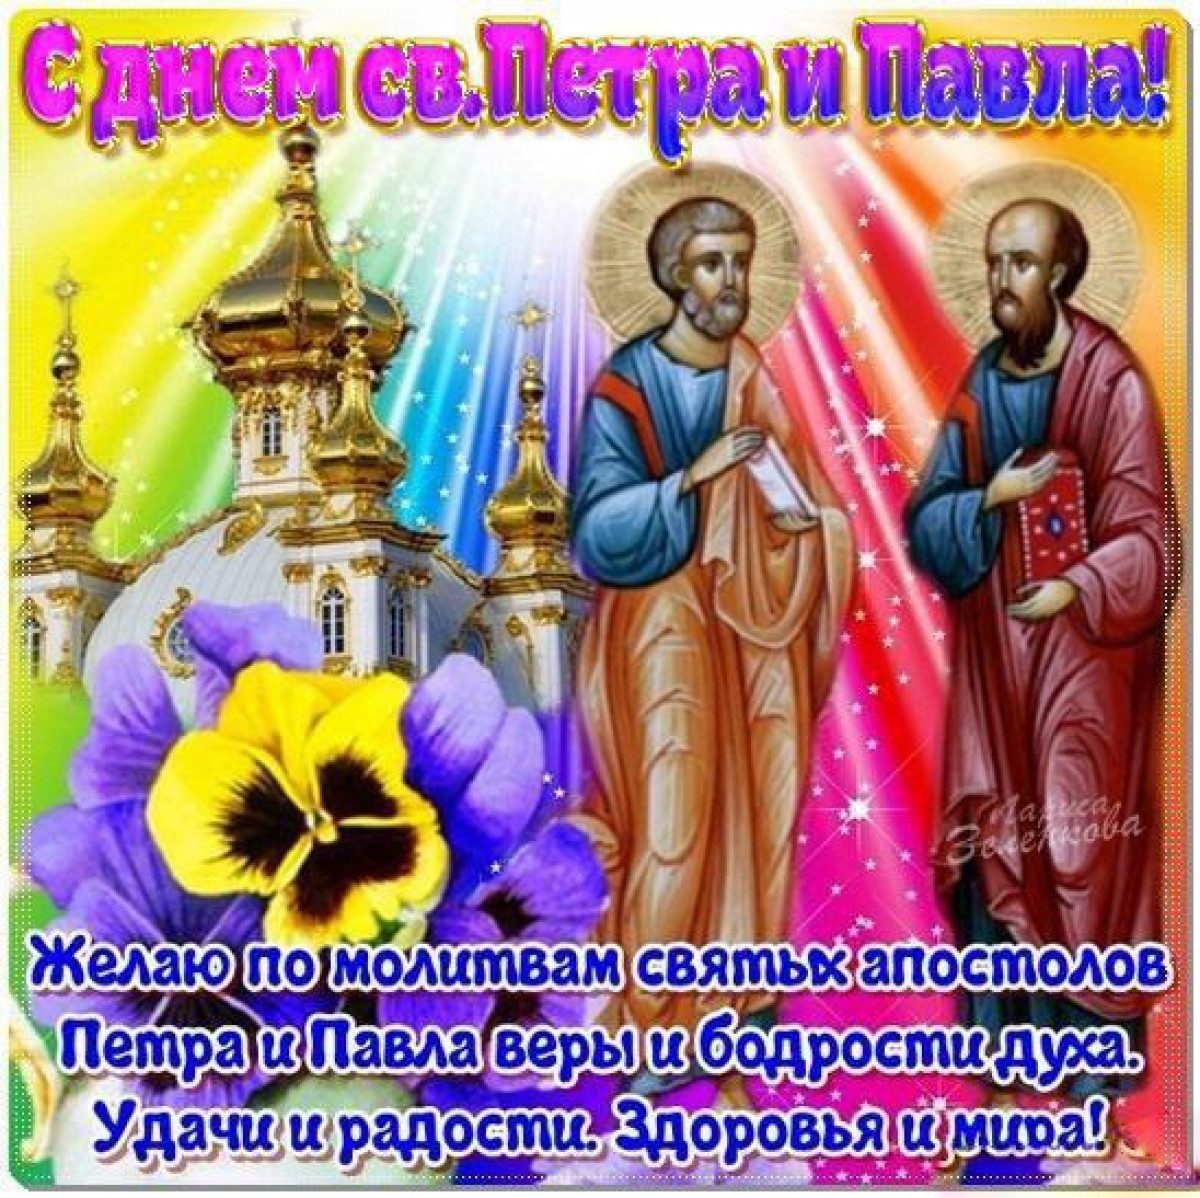 Павлов день картинки красивые. 12июля день святых апостолов Петра и Паала картинки. Праздник яретра и яравла.